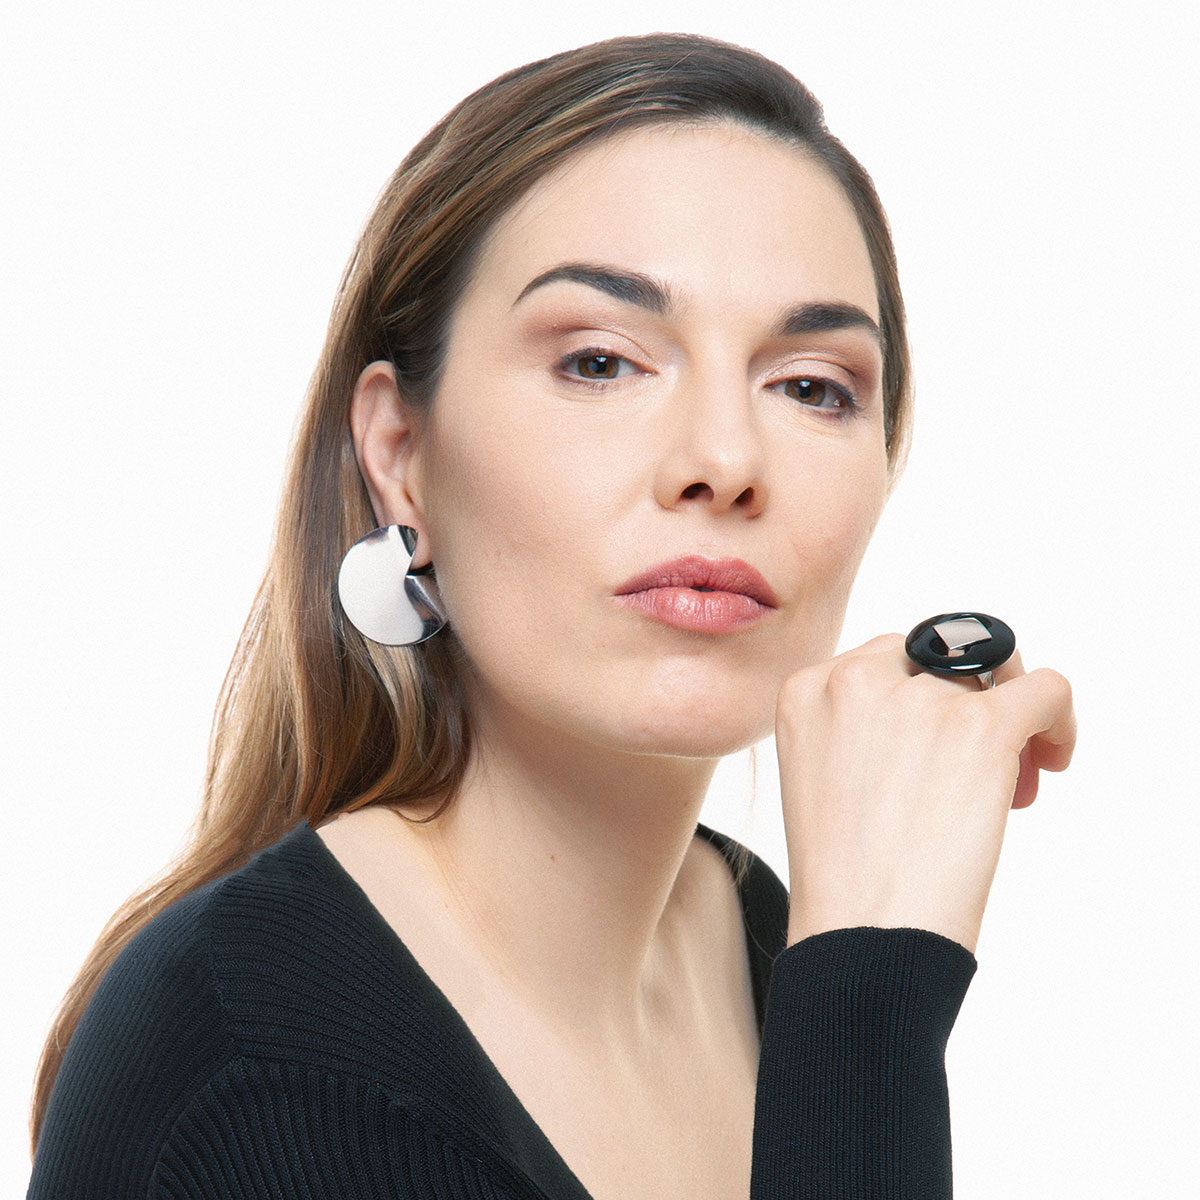 handcrafted sterling silver Pla earrings designed by Belen Bajo m1